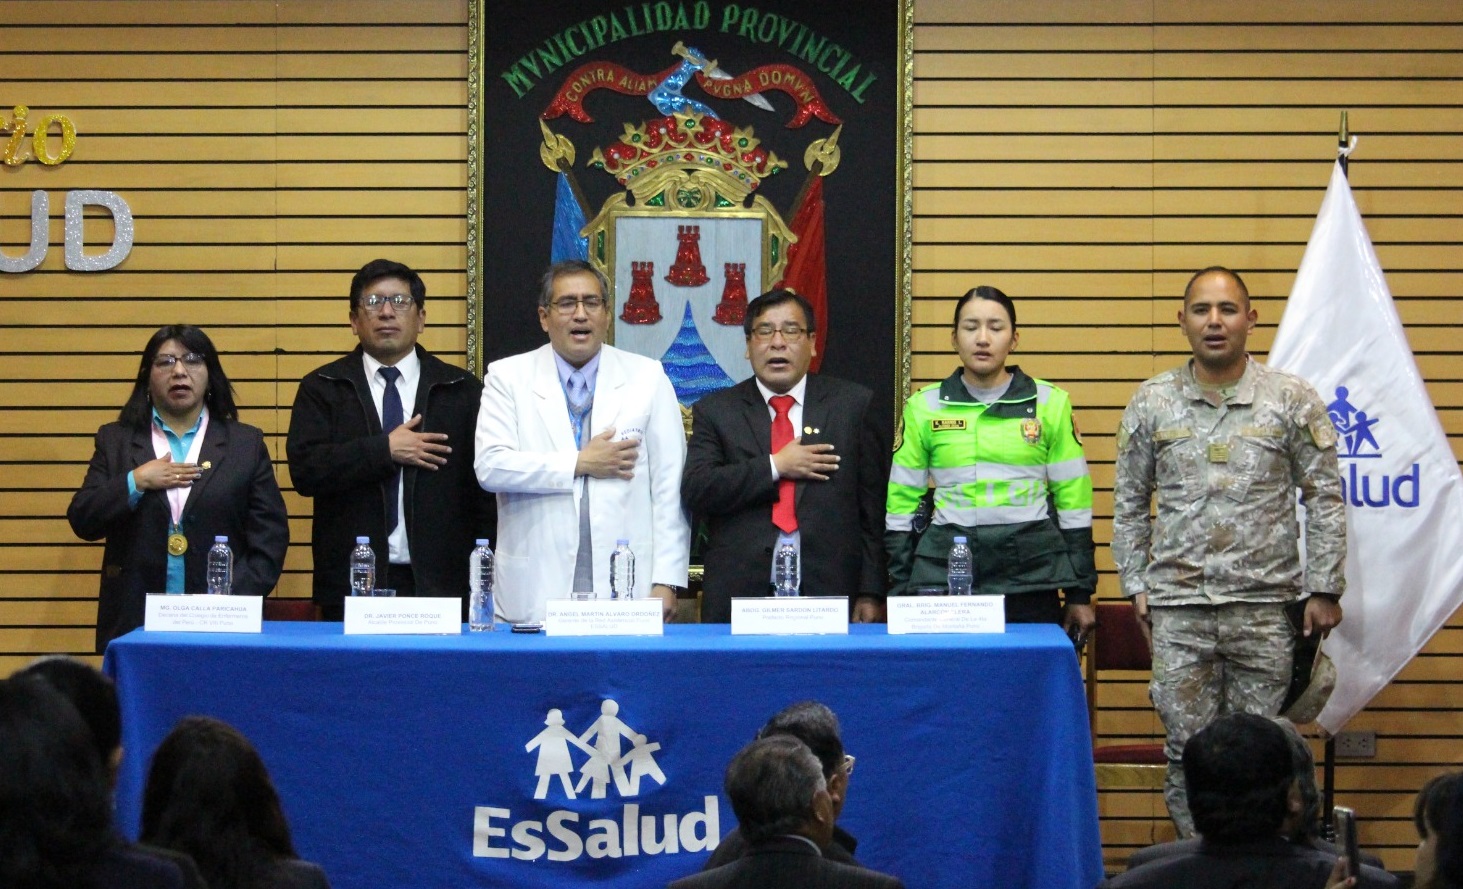 Essalud - EsSalud Puno celebra 87° aniversario del Seguro Social del Perú